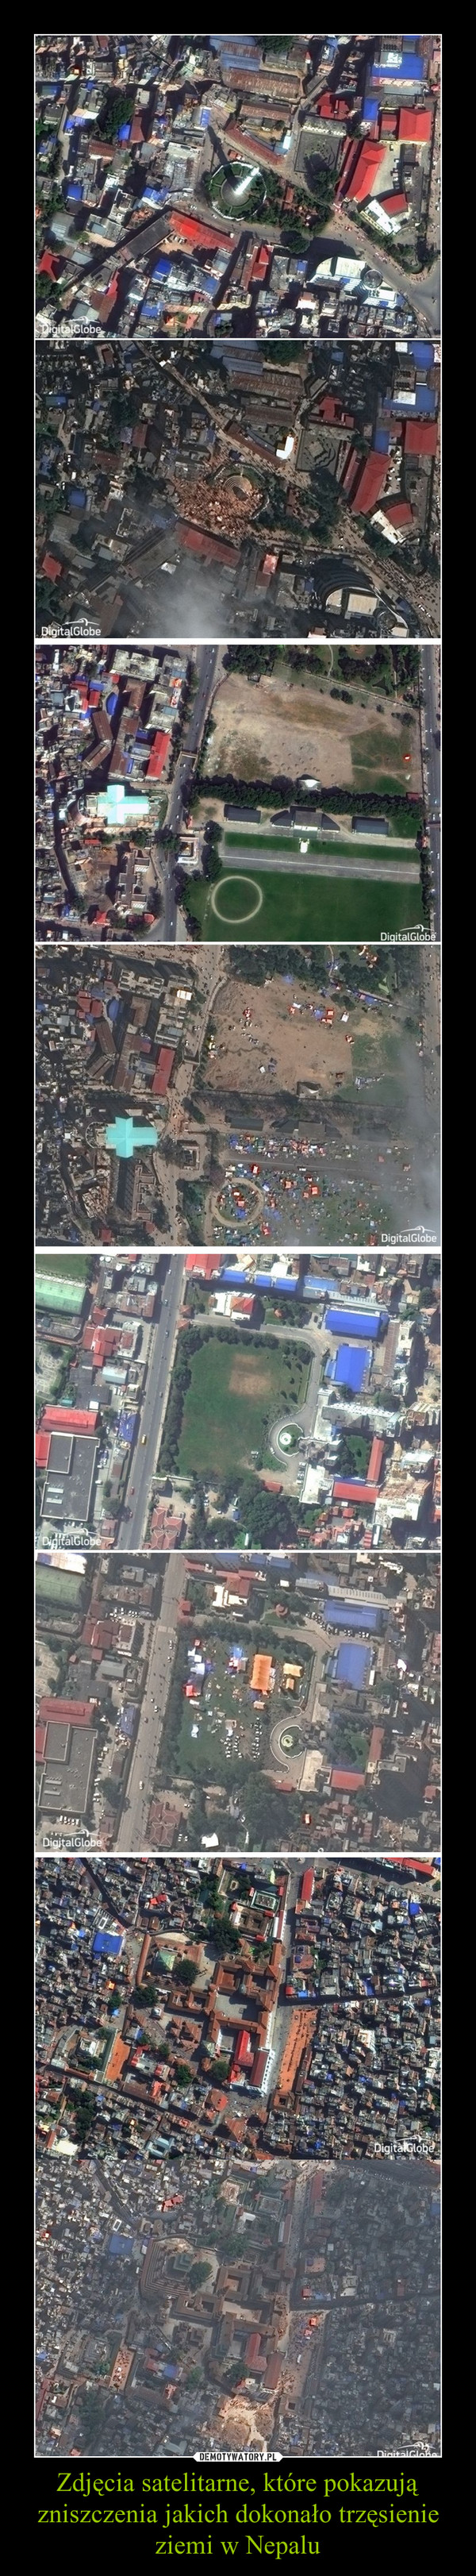 Zdjęcia satelitarne, które pokazują zniszczenia jakich dokonało trzęsienie ziemi w Nepalu –  